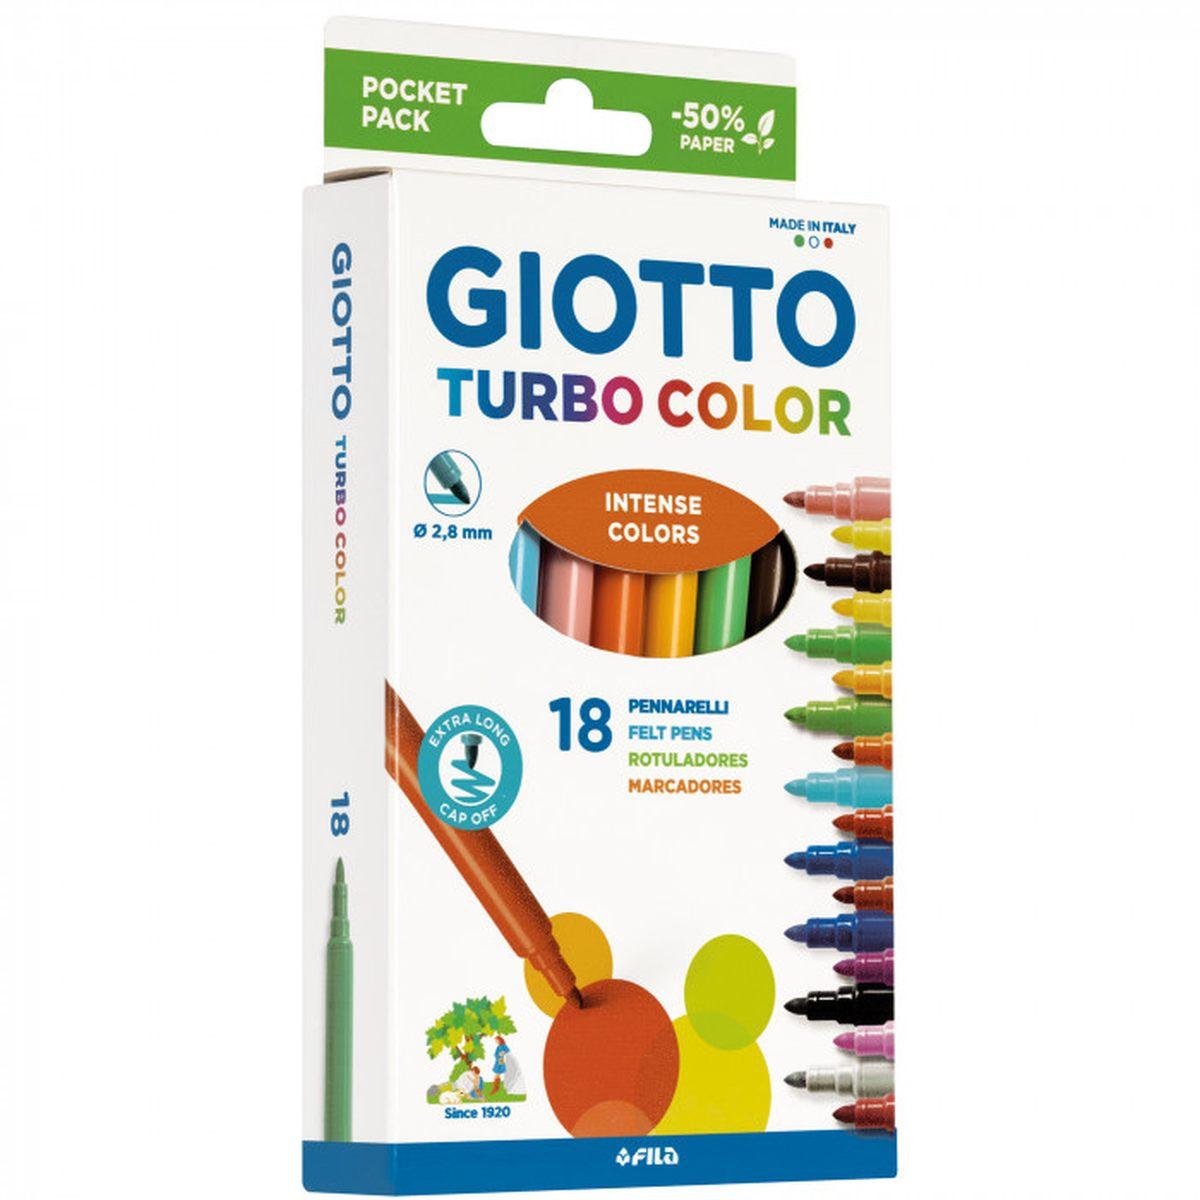 Giotto Giotto turbo color da 18 pezzi 46777 8000825007538